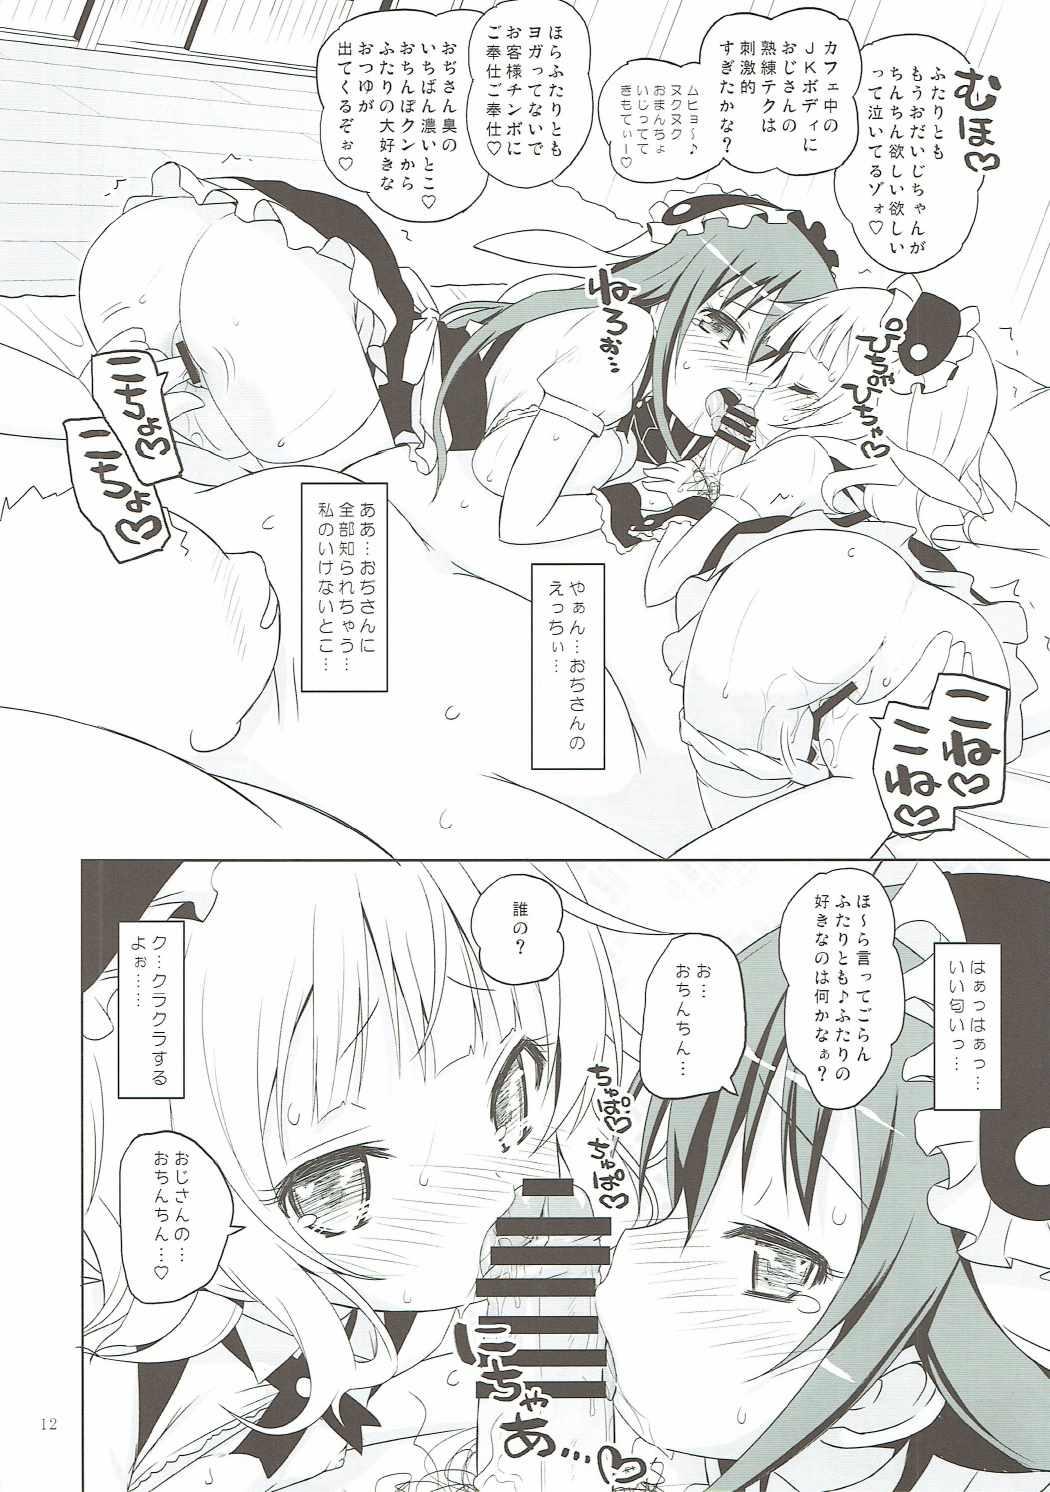 Cruising Sharo-chan VS Caffeine Otoko - Gochuumon wa usagi desu ka Boys - Page 11